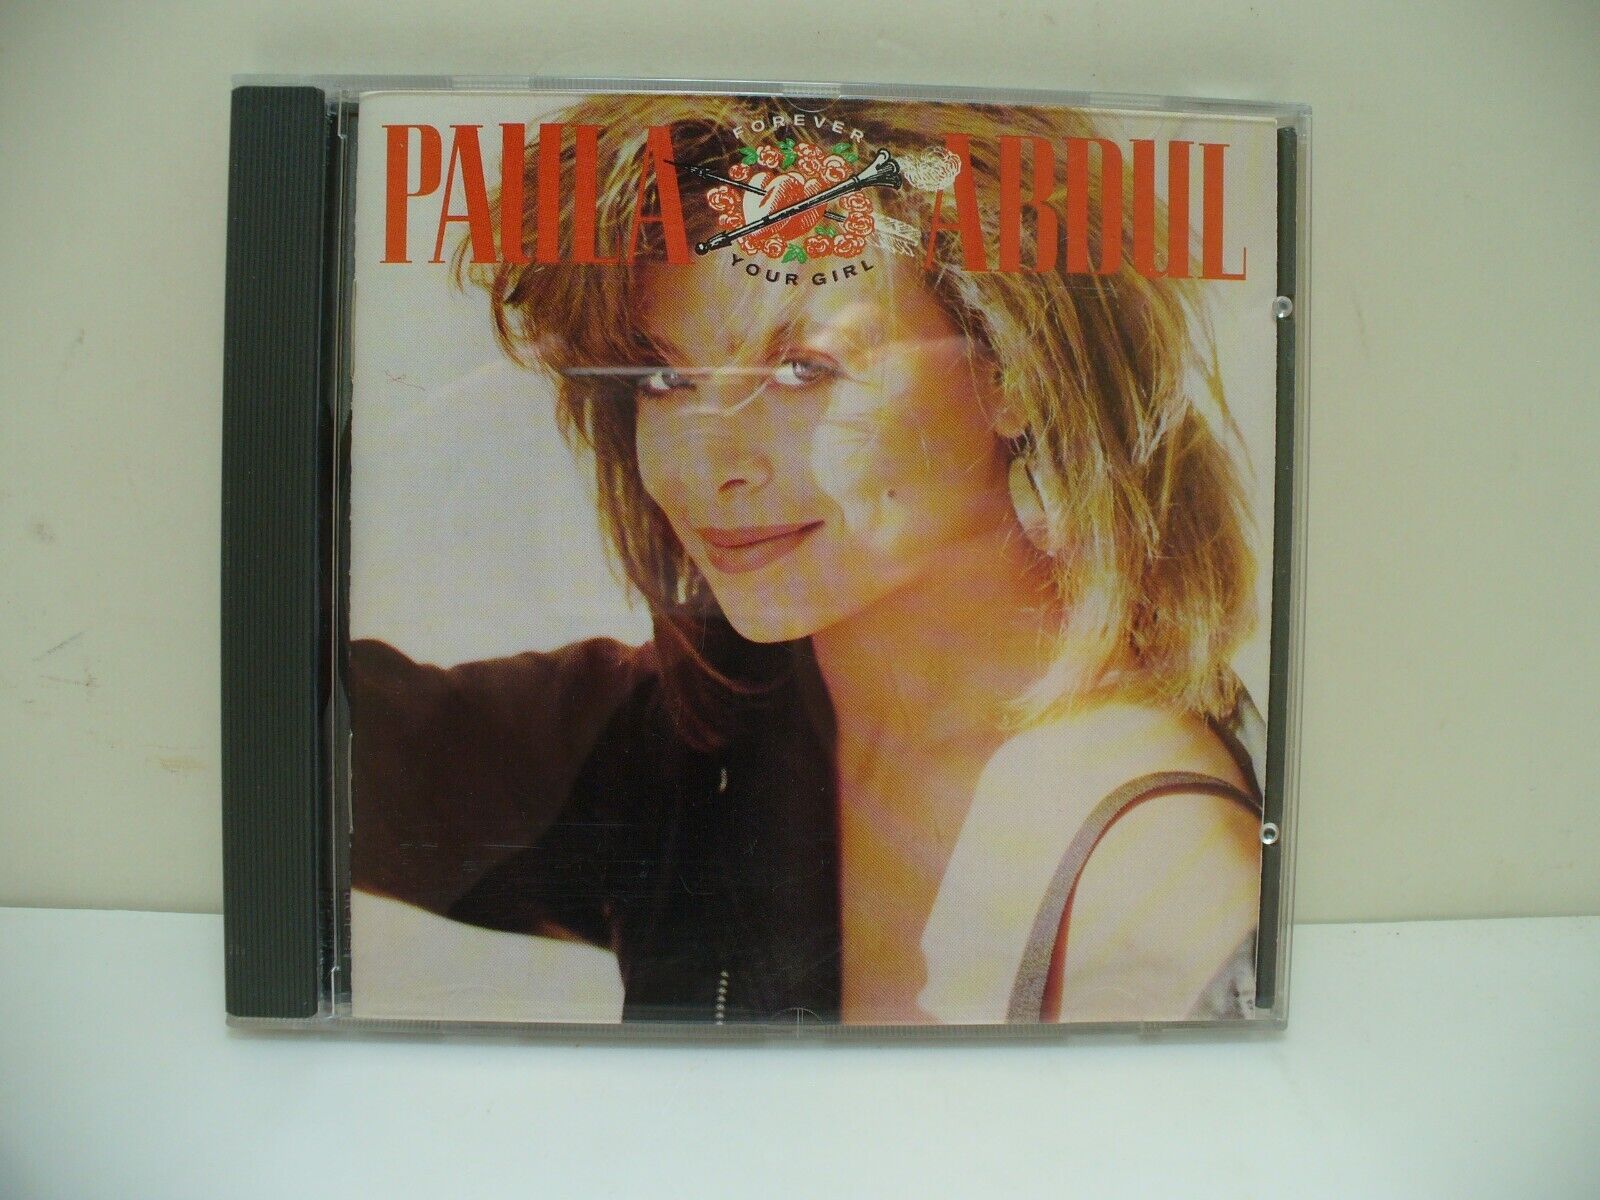 Paula Abdul Forever Your Girl CD 1988 Virgin 7 90943-2 Media Very Good *USED*